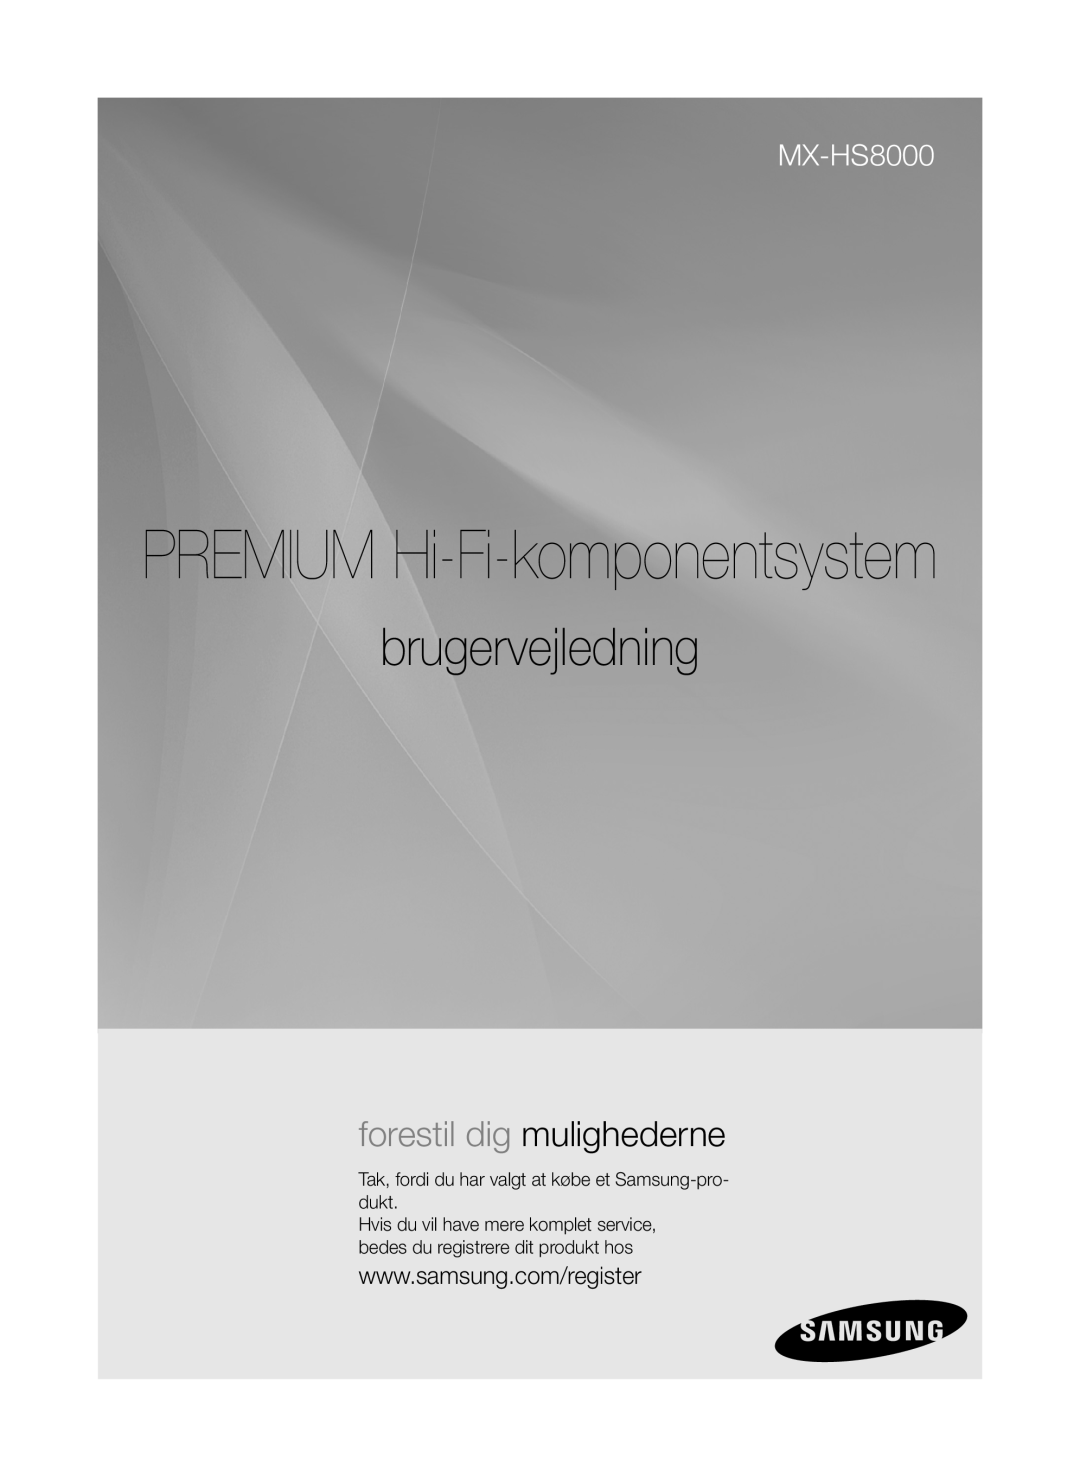 Samsung MX-HS8000/ZF, MX-HS8000/EN manual PREMIUM Hi-Fi-komponentsystem, brugervejledning, forestil dig mulighederne 